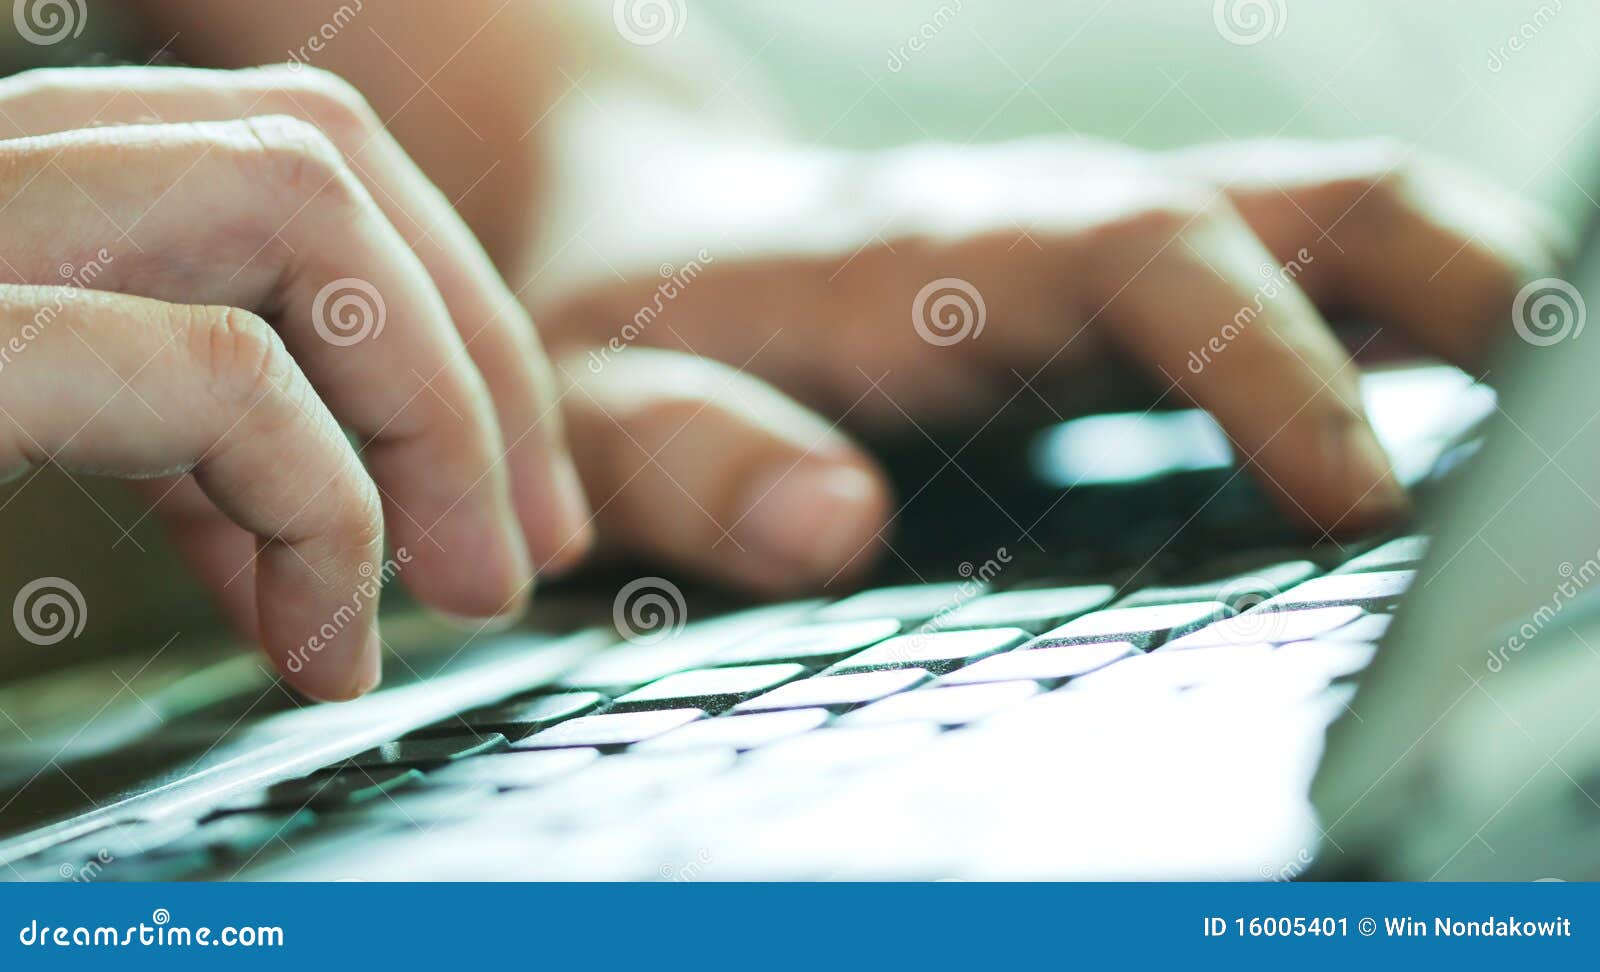 hand on keyboard